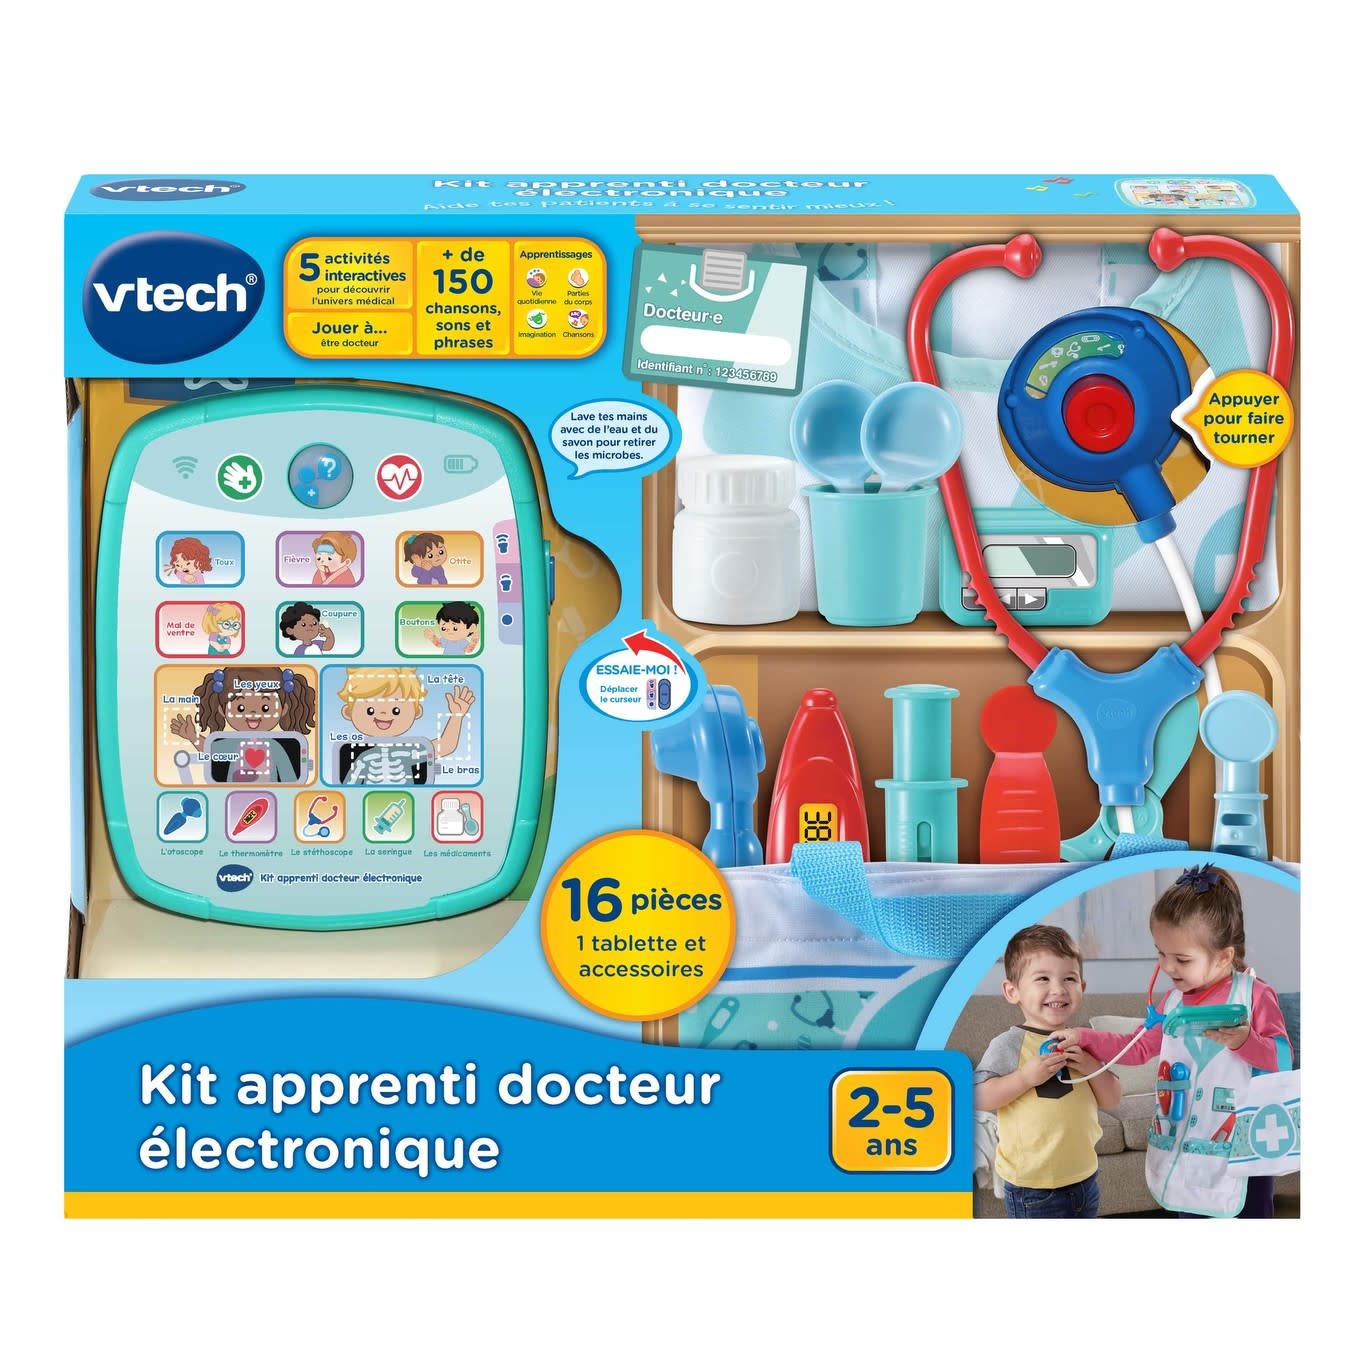 VTech VTech - Kit apprenti docteur électronique